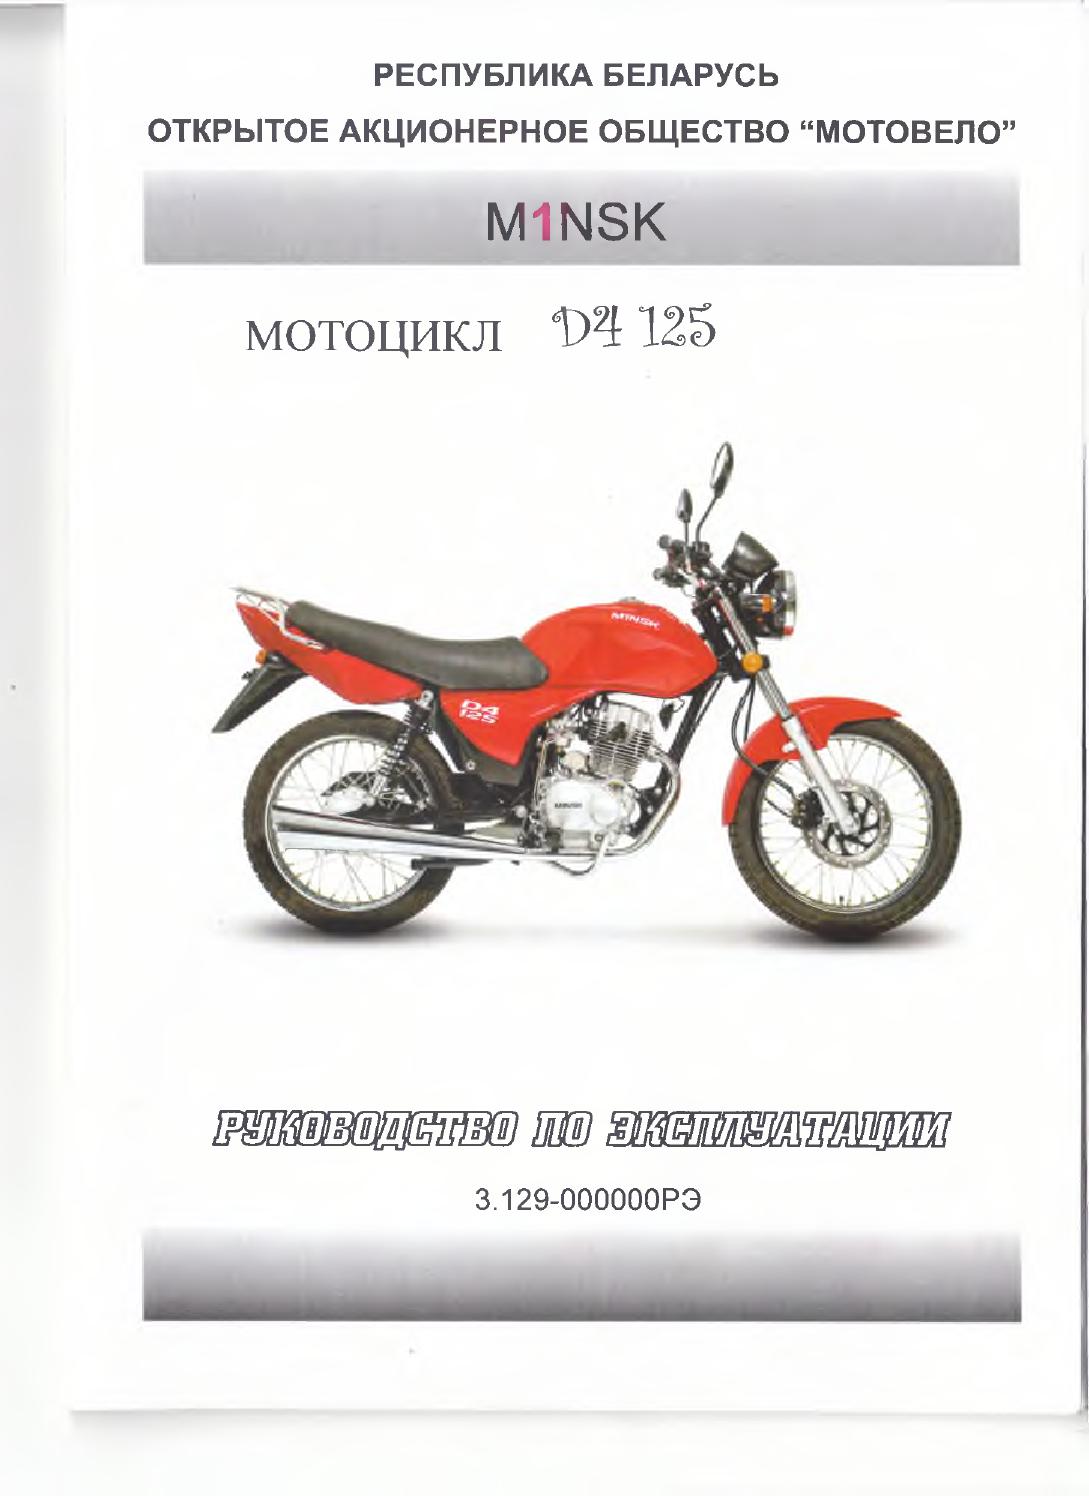 Тюнинг мотоцикла Минск своими руками